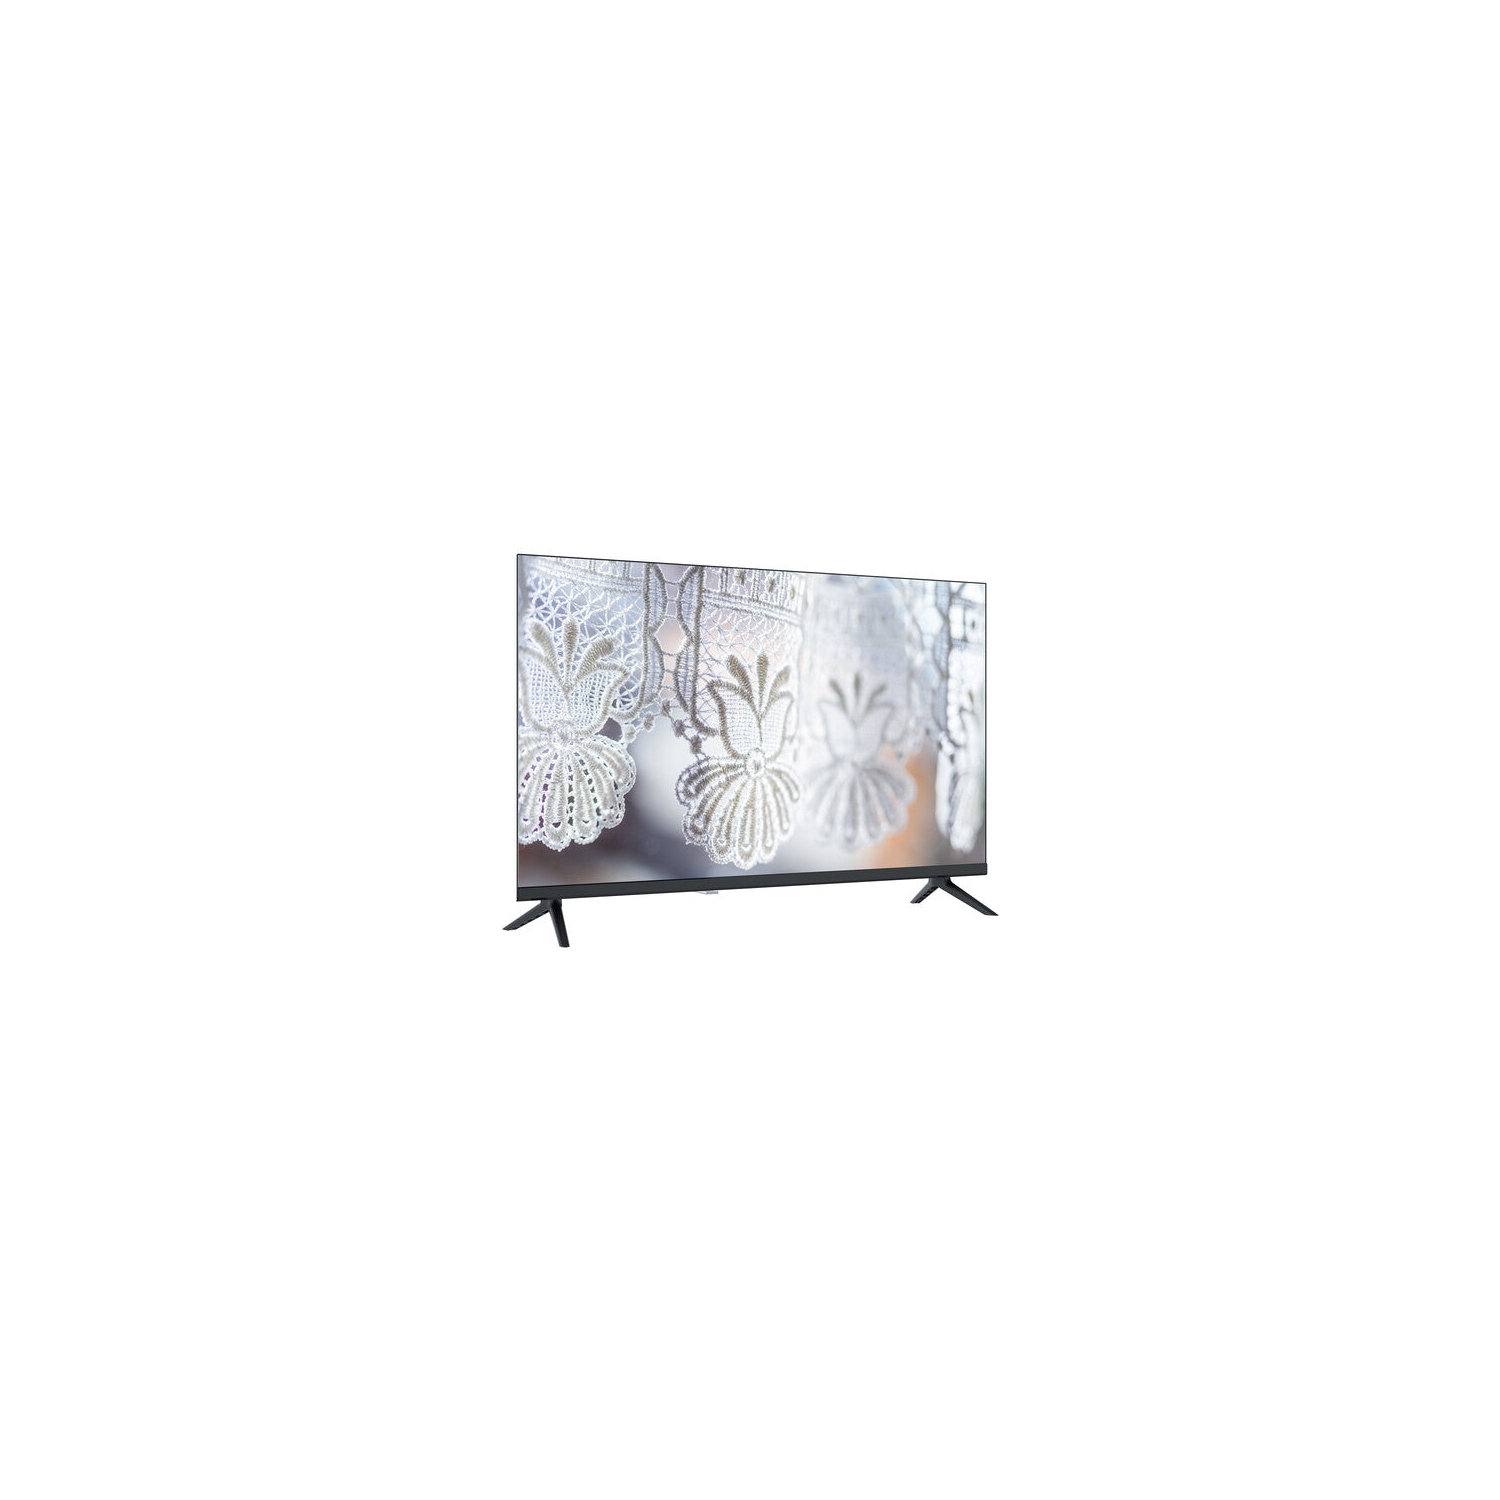 Sansui V1HA 32" Class HD Smart LED TV